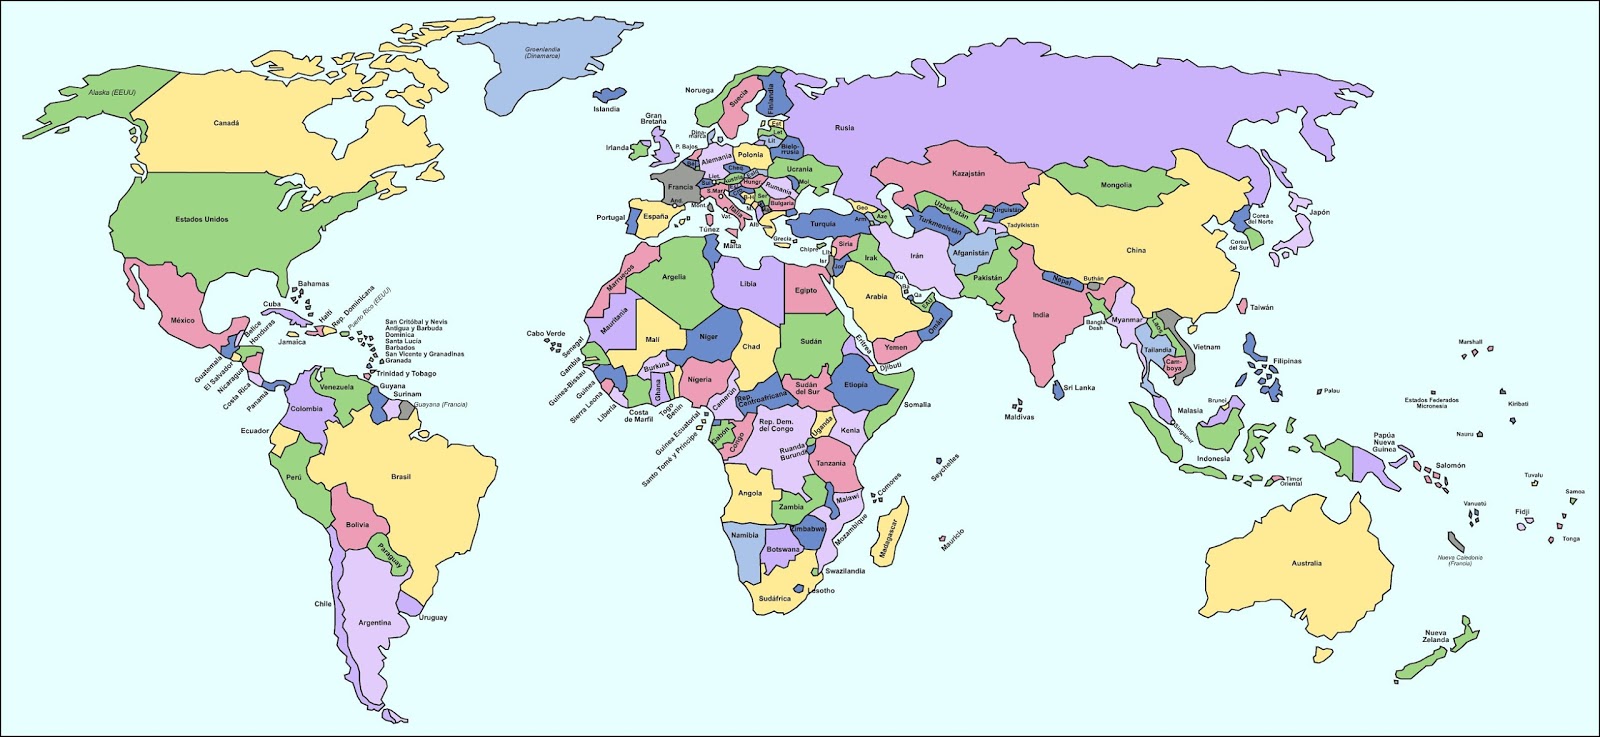 Atlas Geográfico: El mundo